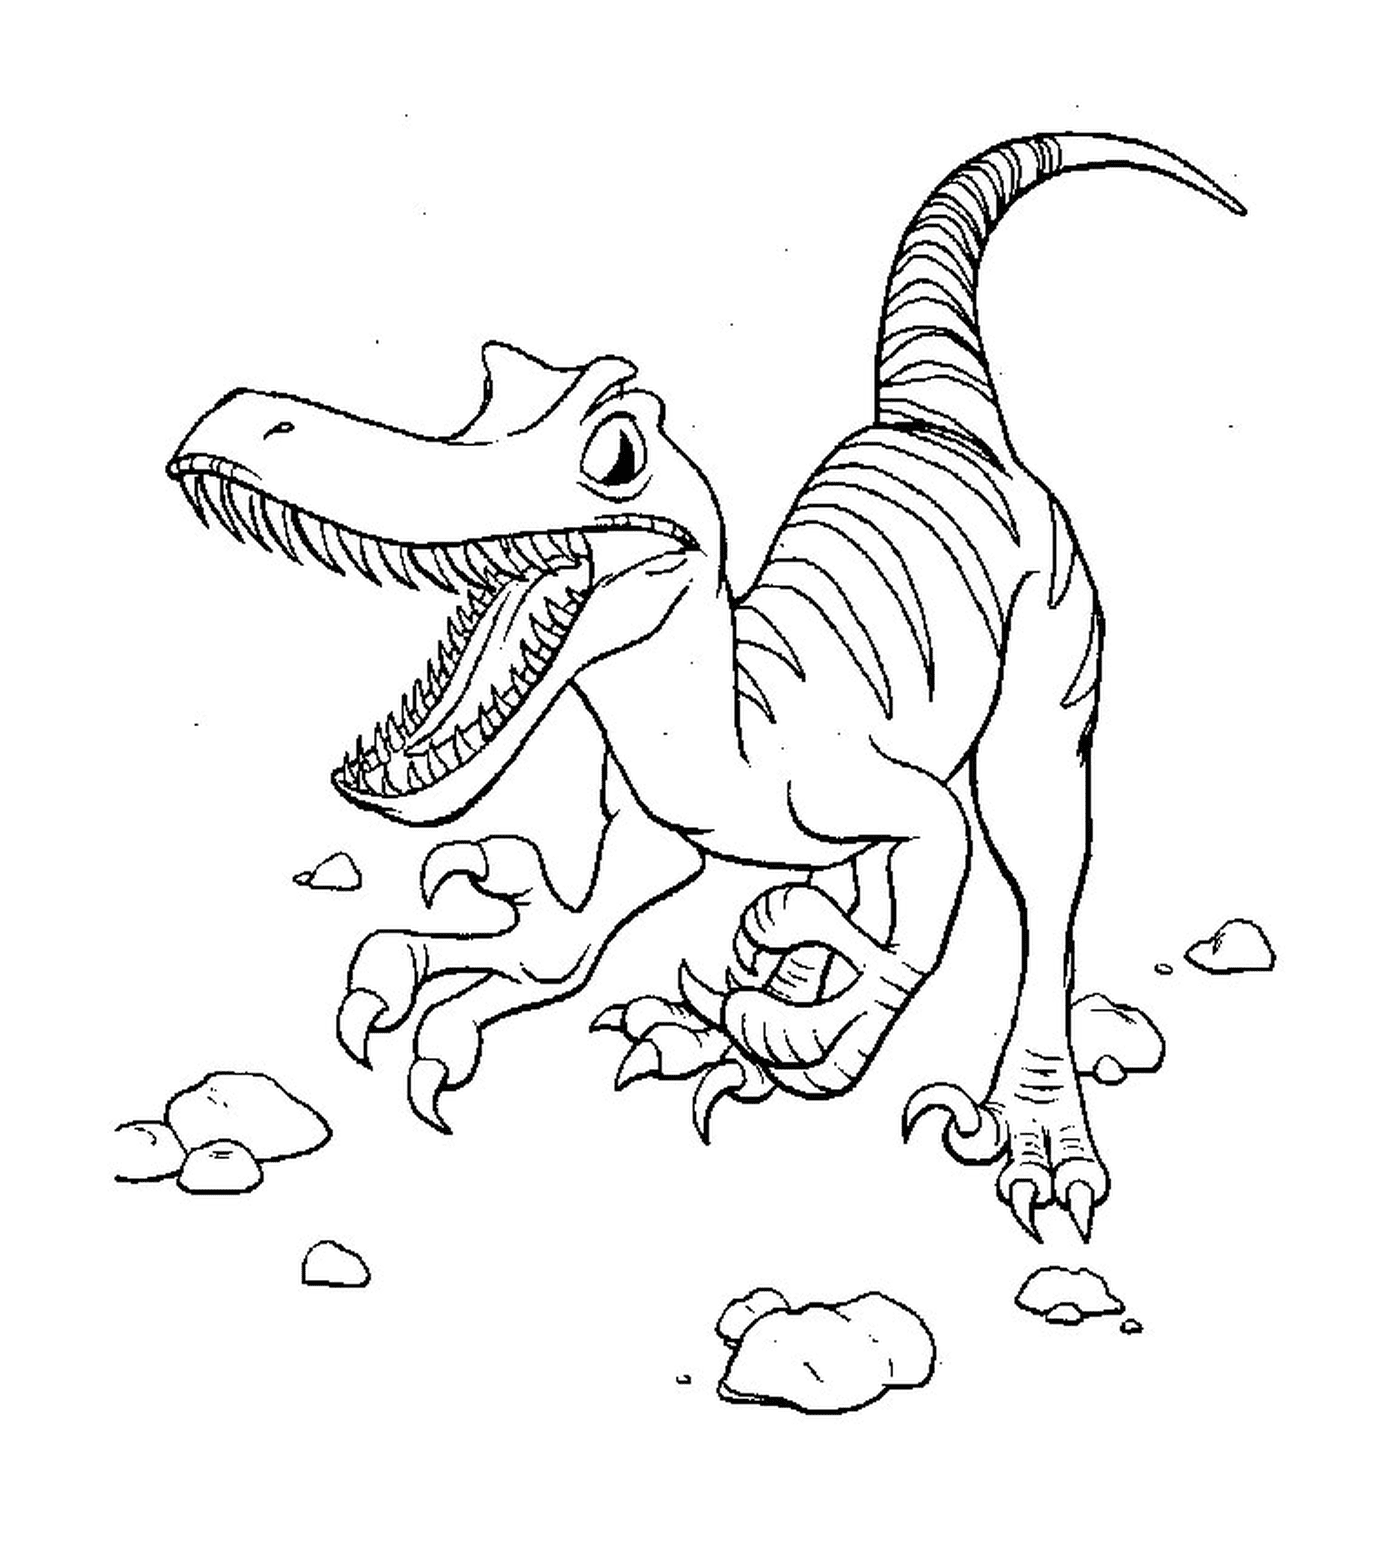  Динозавр на земле 